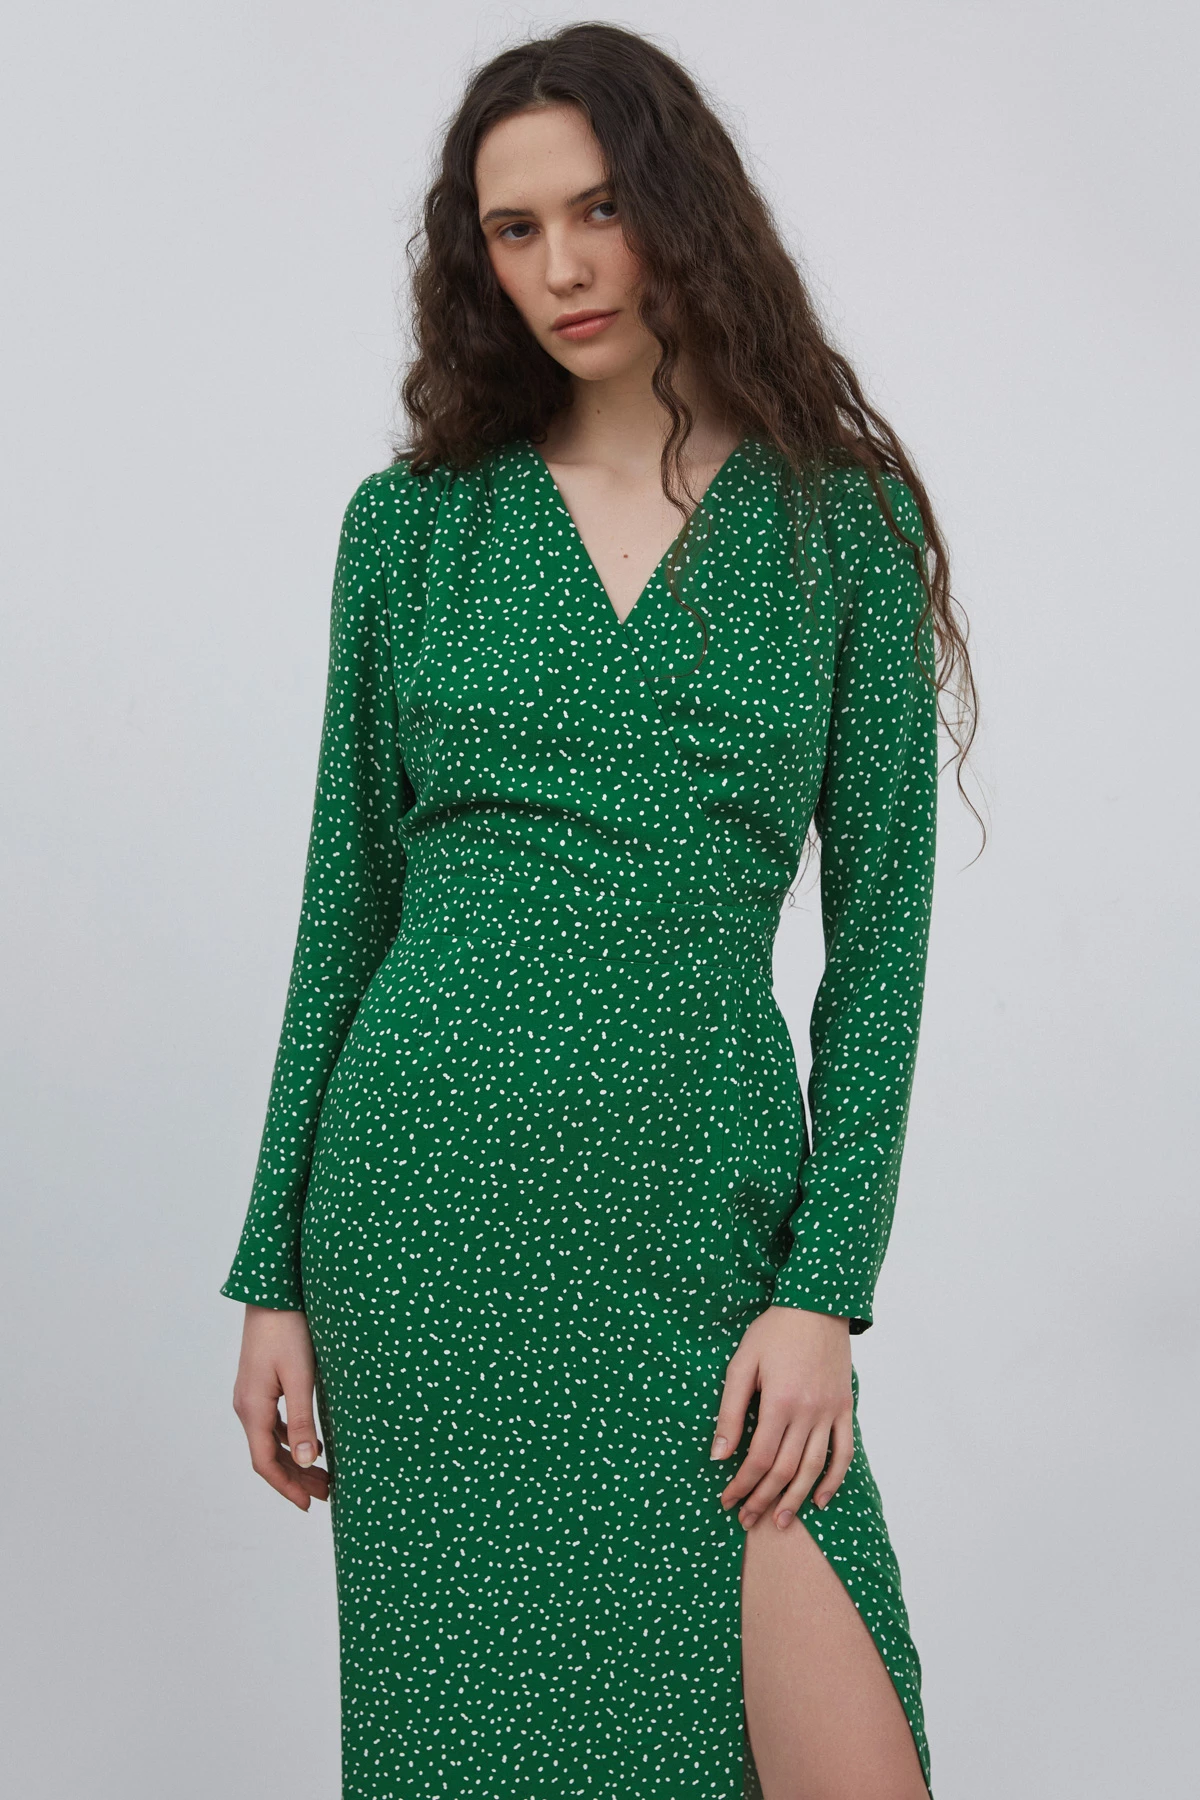 Зелена сукня міді з розрізом в принт "молочні краплі" з віскози, фото 2